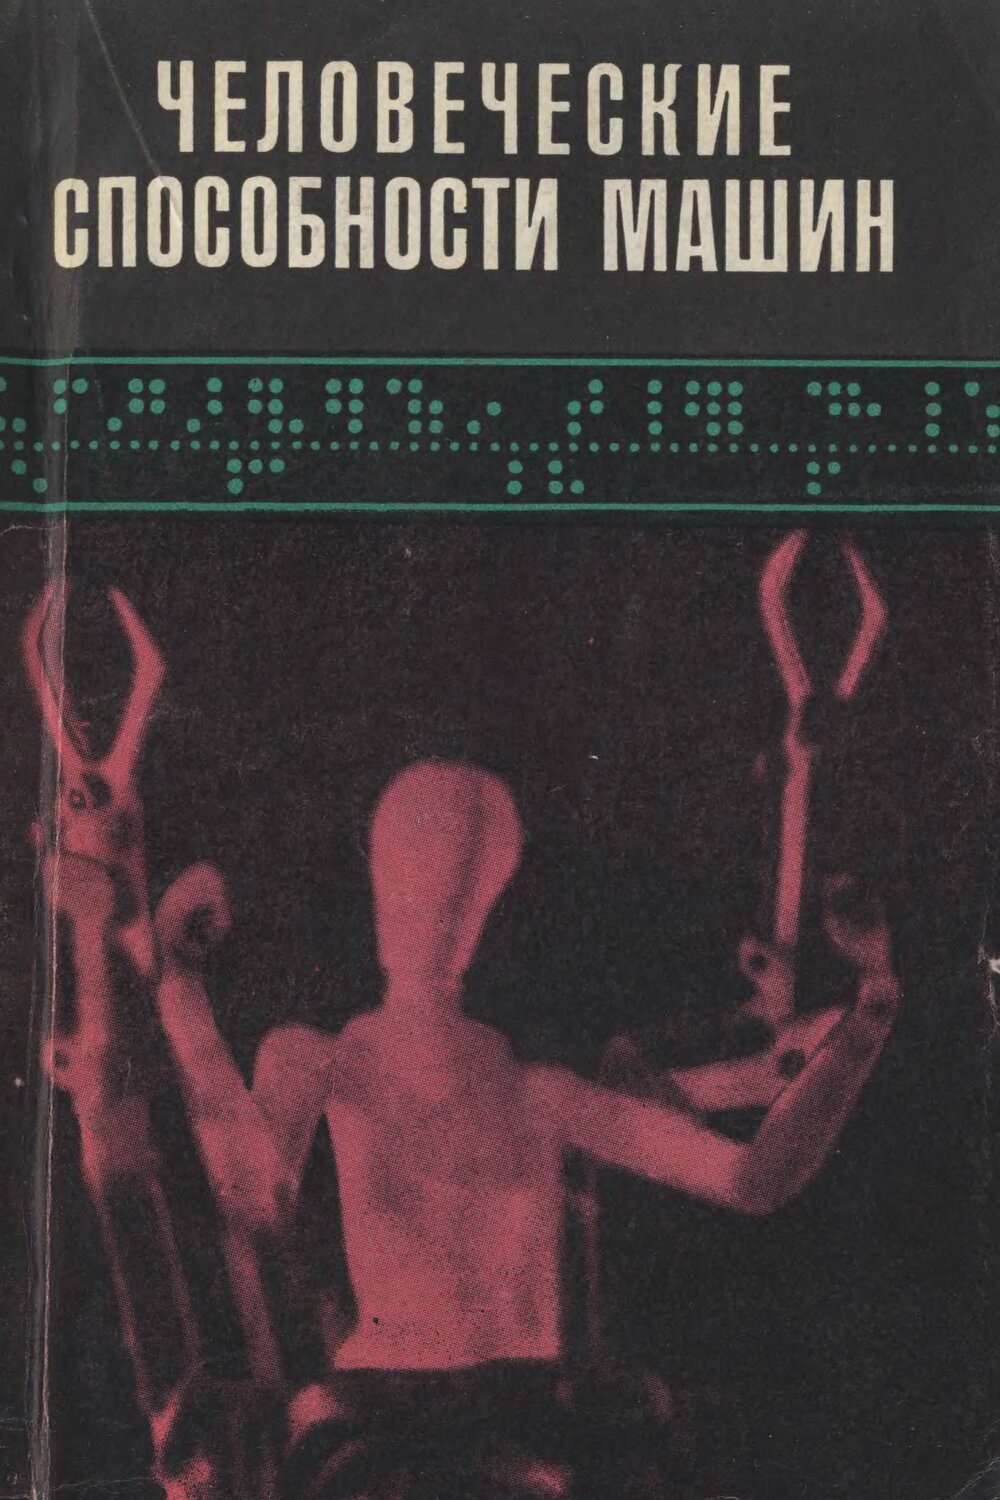 Обложка книги "Человеческие способности машин"